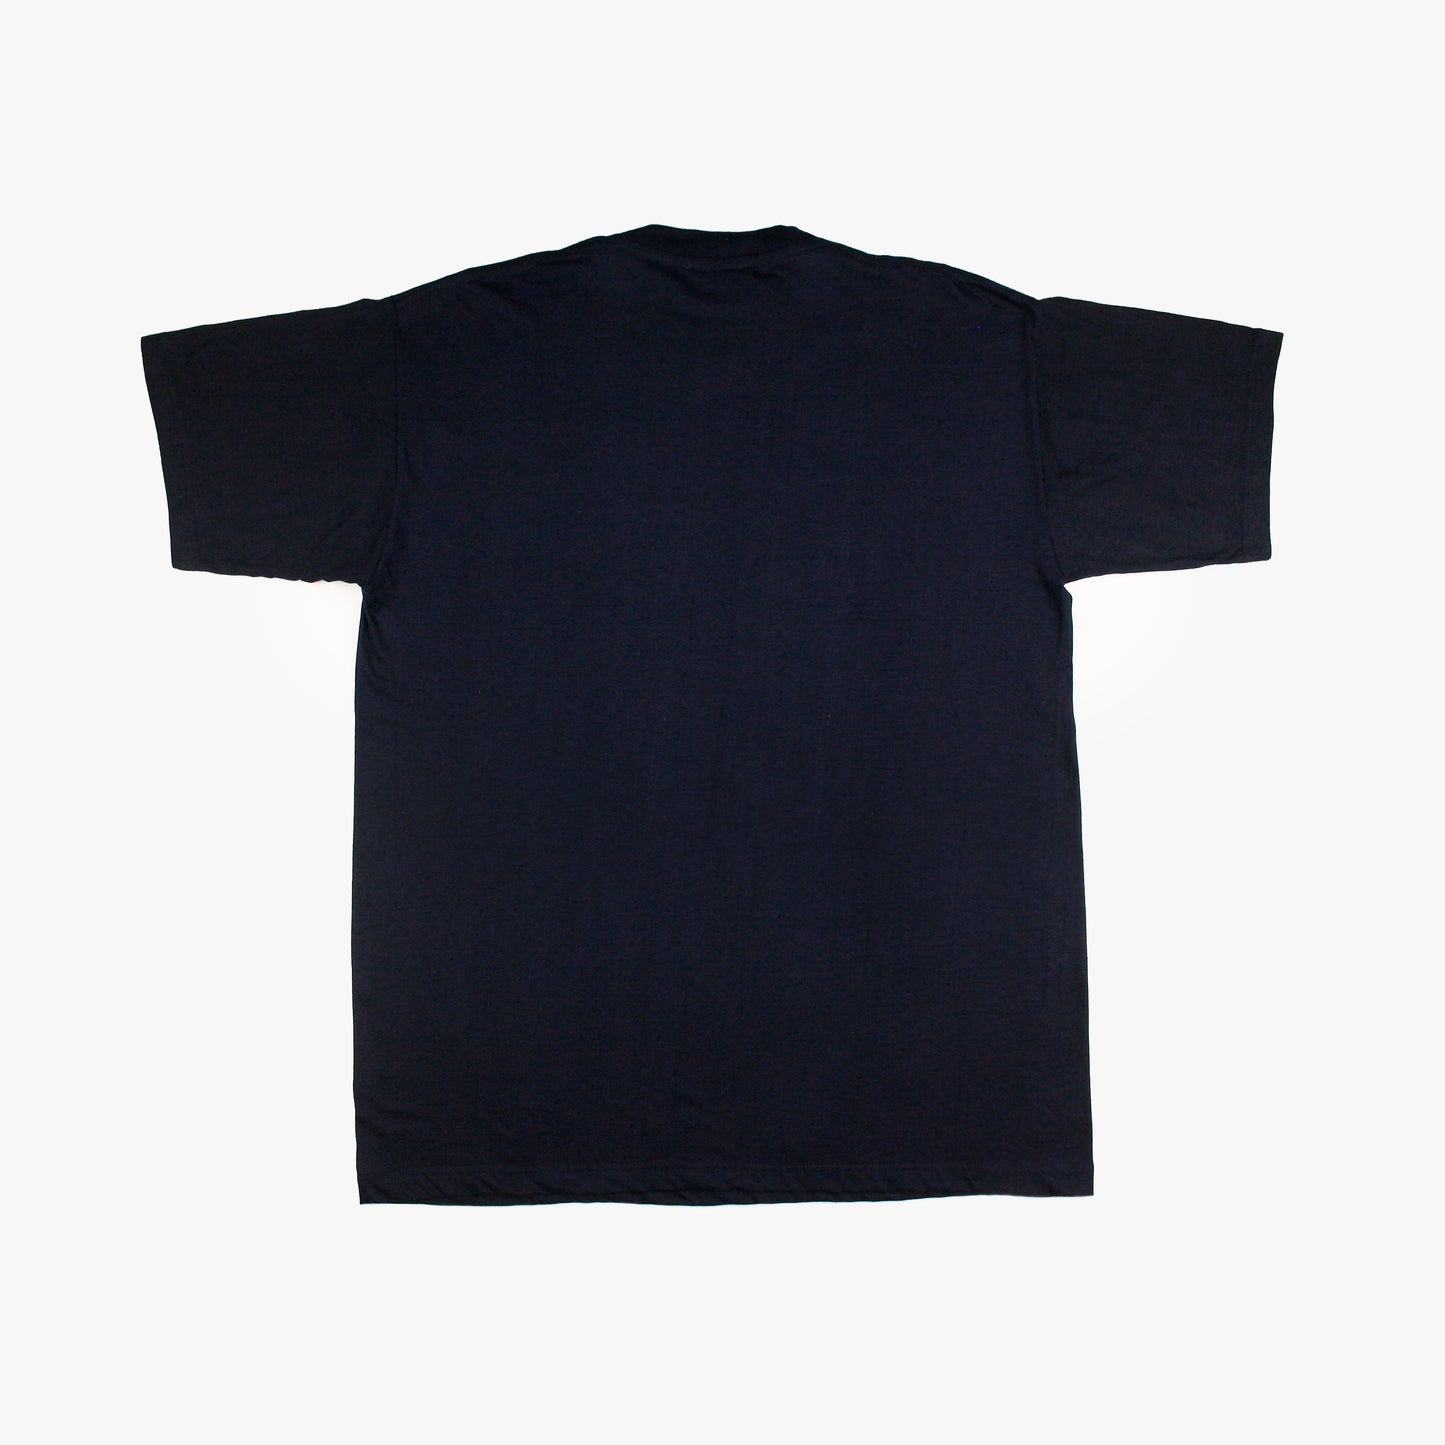 Korea/Japan 2002 • Official Merchandise T-Shirt *BNWT* • XL